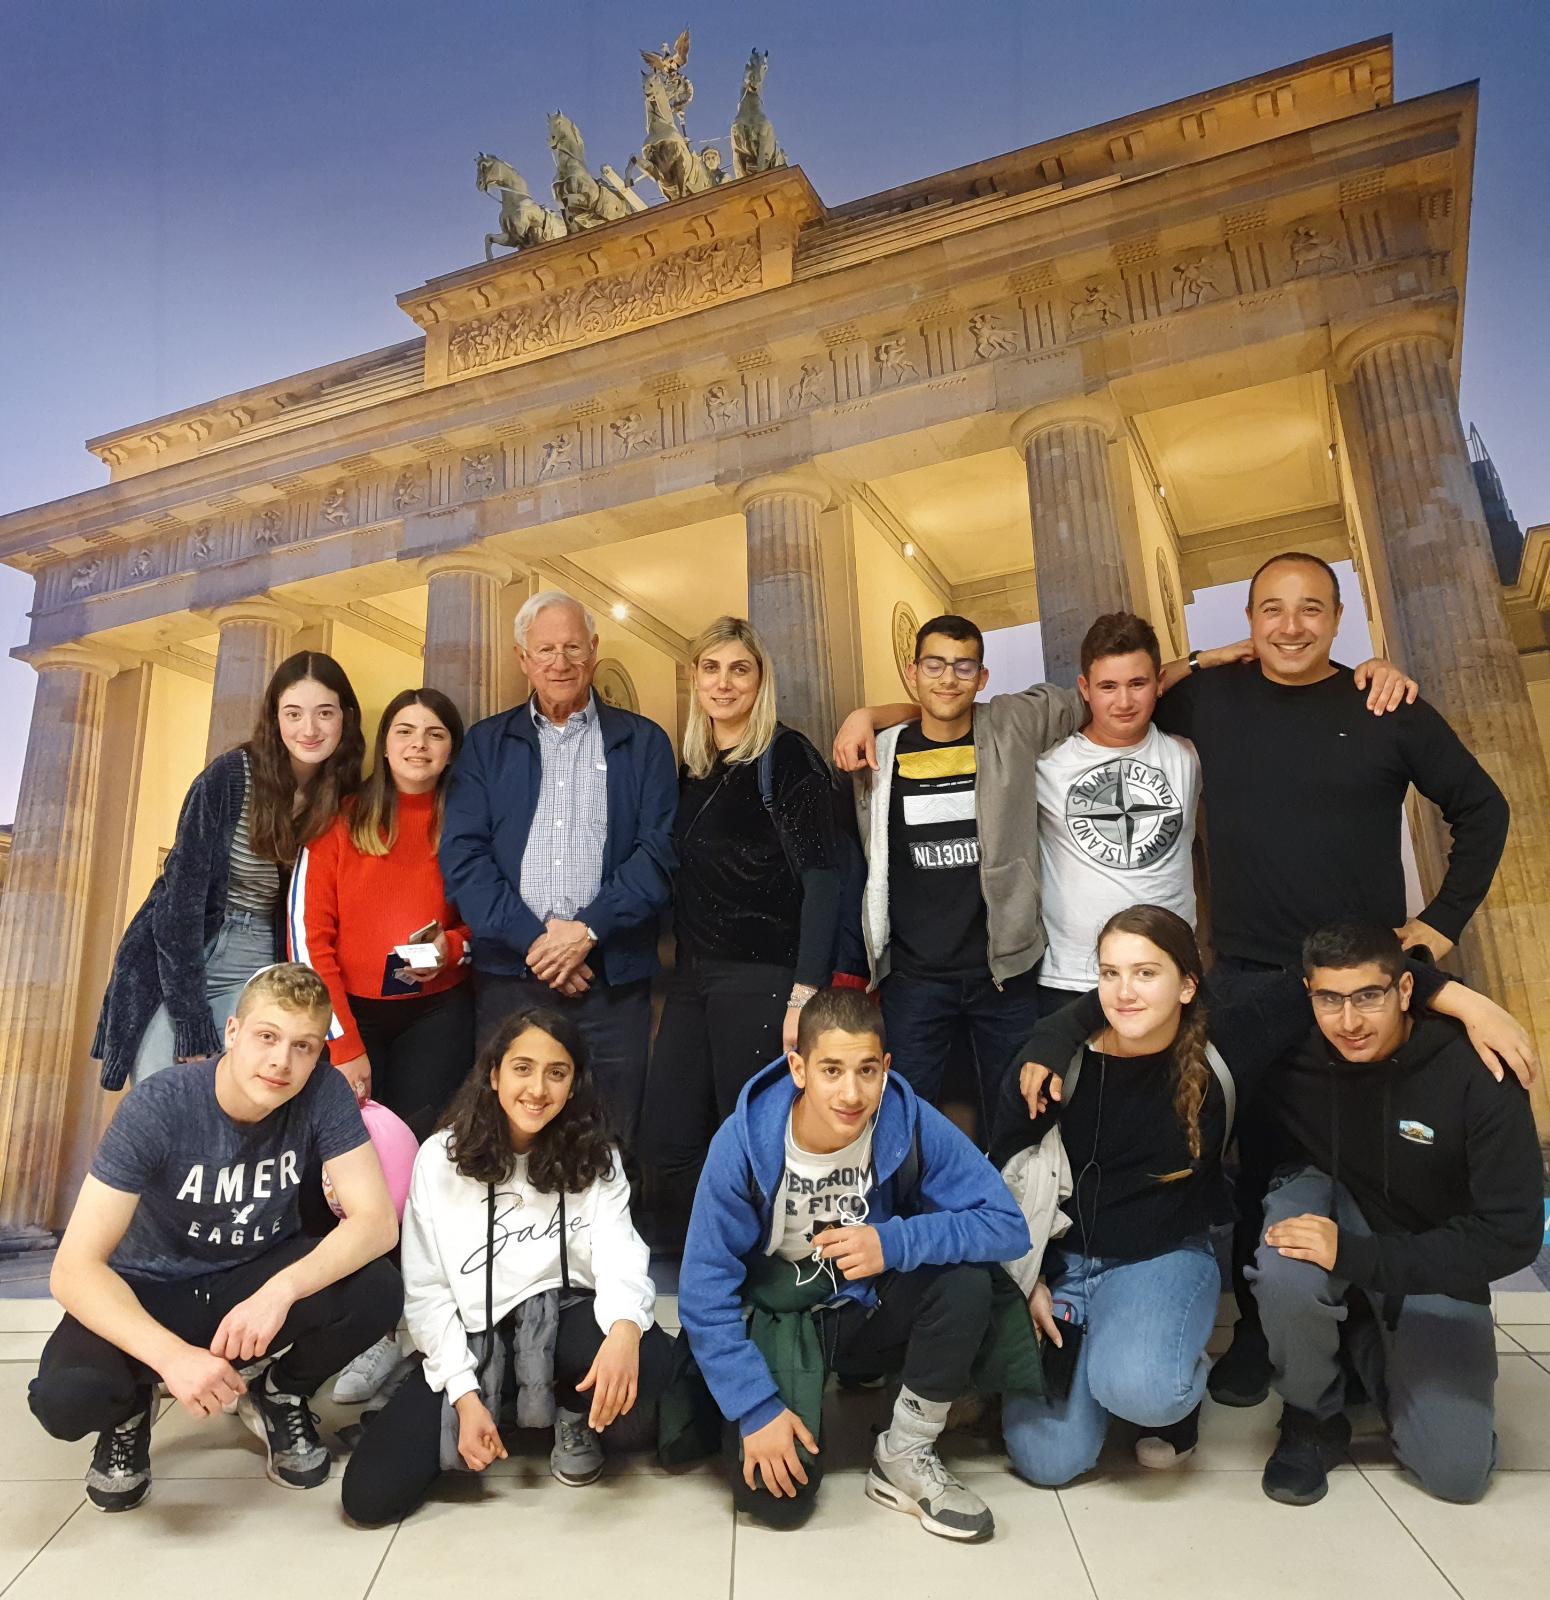 תלמידי קורס "דיפלומטיה ותקשורת בינלאומית" 2019 סיירו במחוז אסלינגן בגרמניה